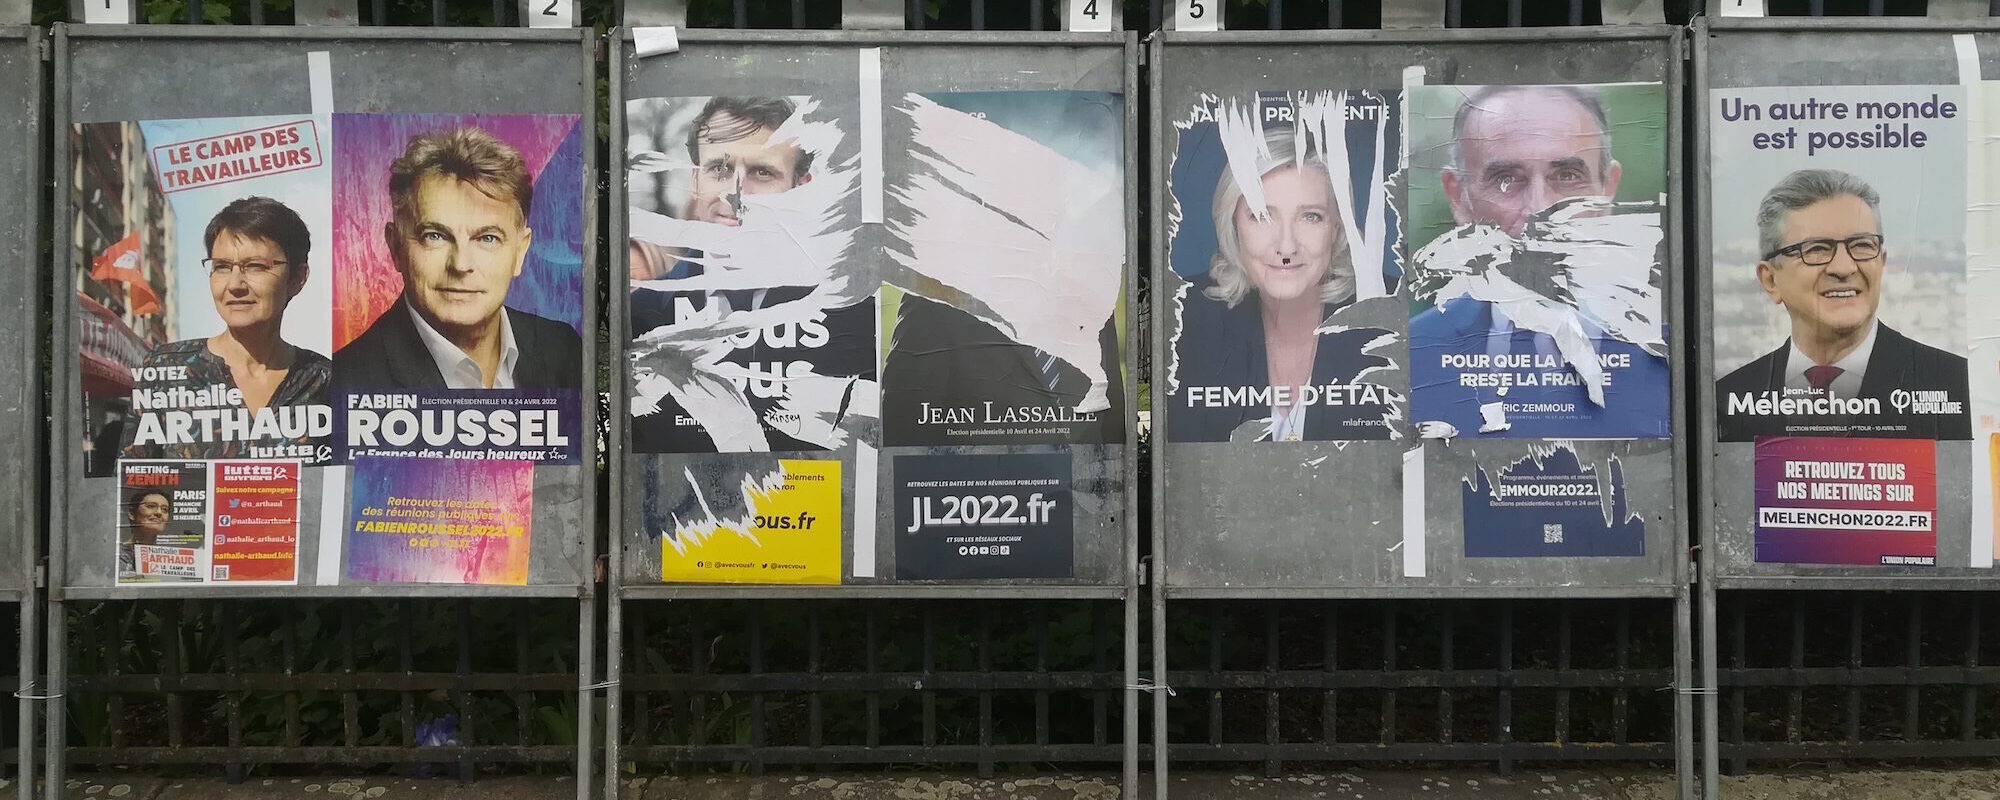 Macron devant Mélenchon à Bordeaux, Le Pen progresse partout ailleurs en Gironde